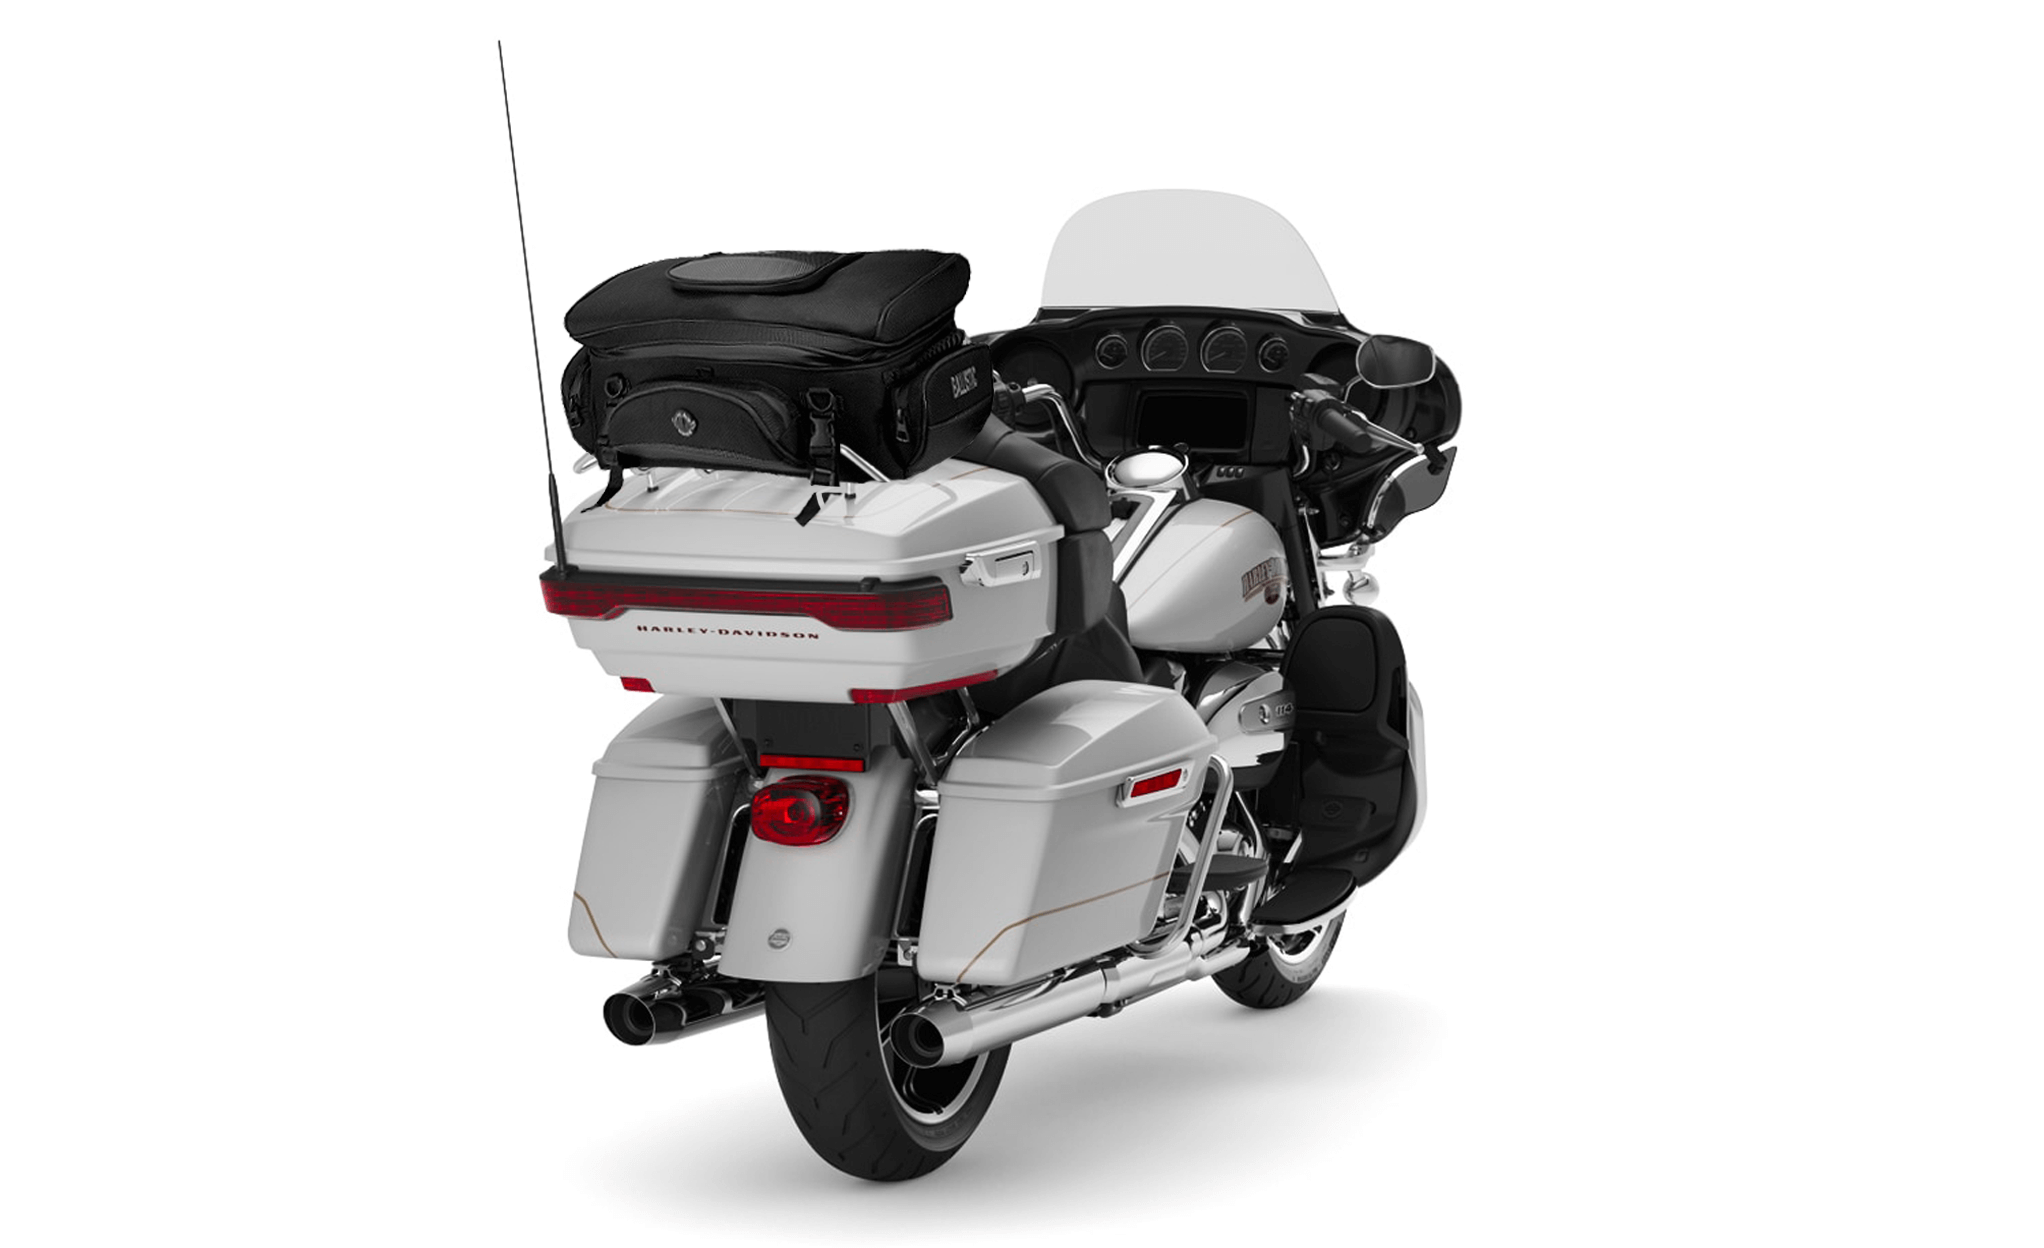 Viking Voyage Elite XL Suzuki Motorcycle Sissy Bar Bag Bag on Bike View @expand